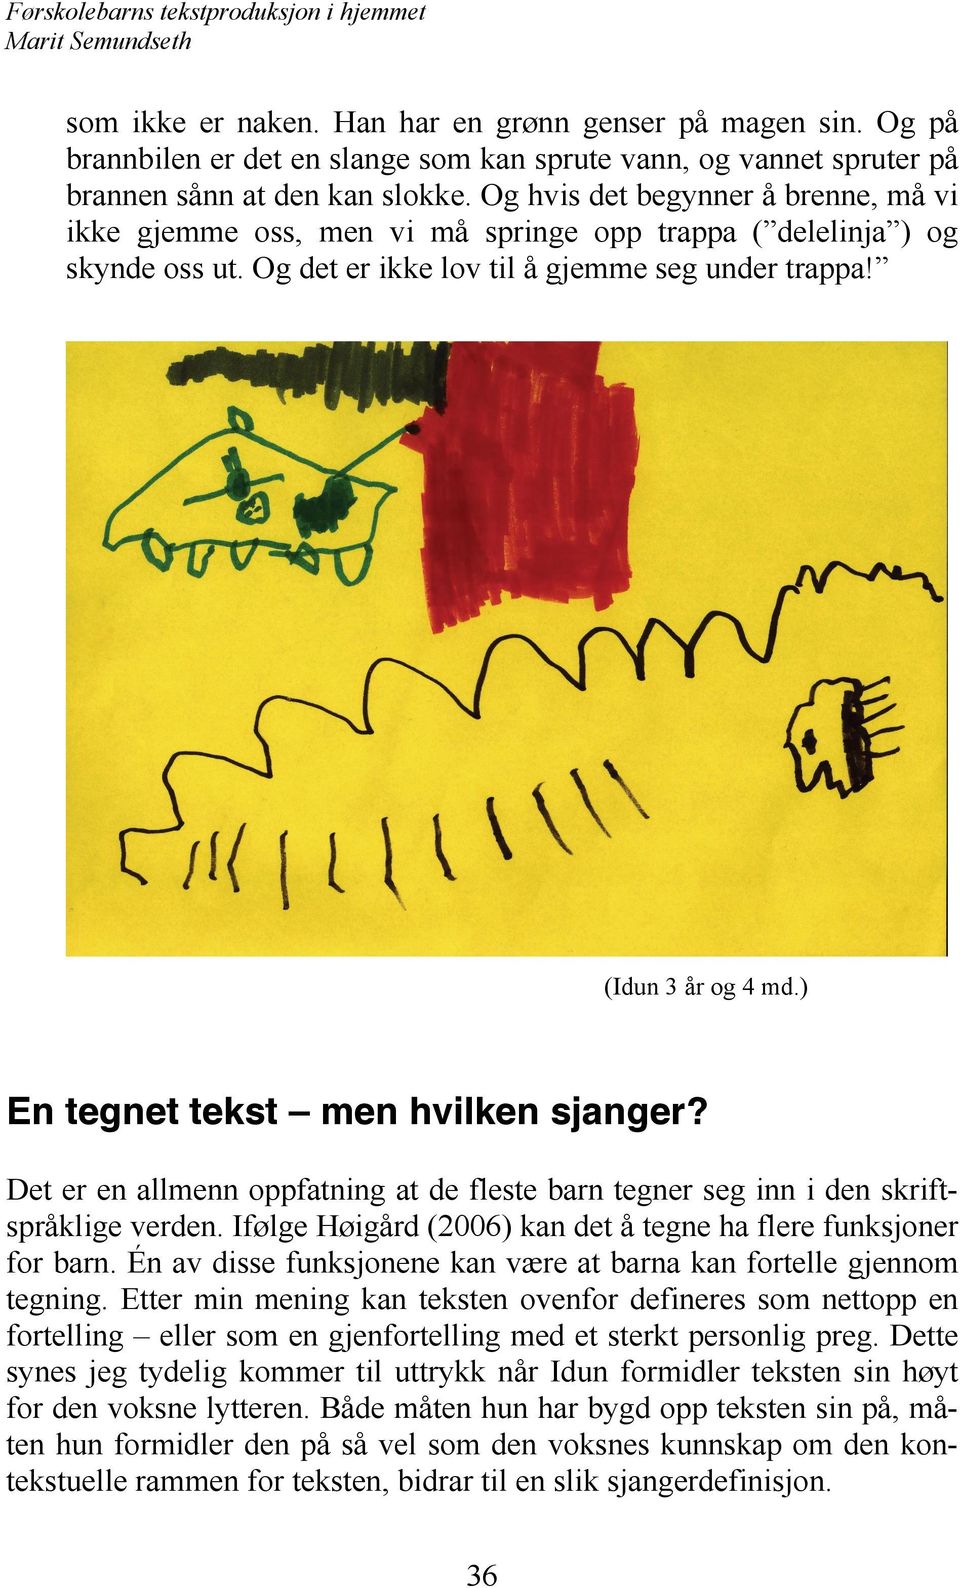 ) En tegnet tekst men hvilken sjanger? Det er en allmenn oppfatning at de fleste barn tegner seg inn i den skriftspråklige verden. Ifølge Høigård (2006) kan det å tegne ha flere funksjoner for barn.